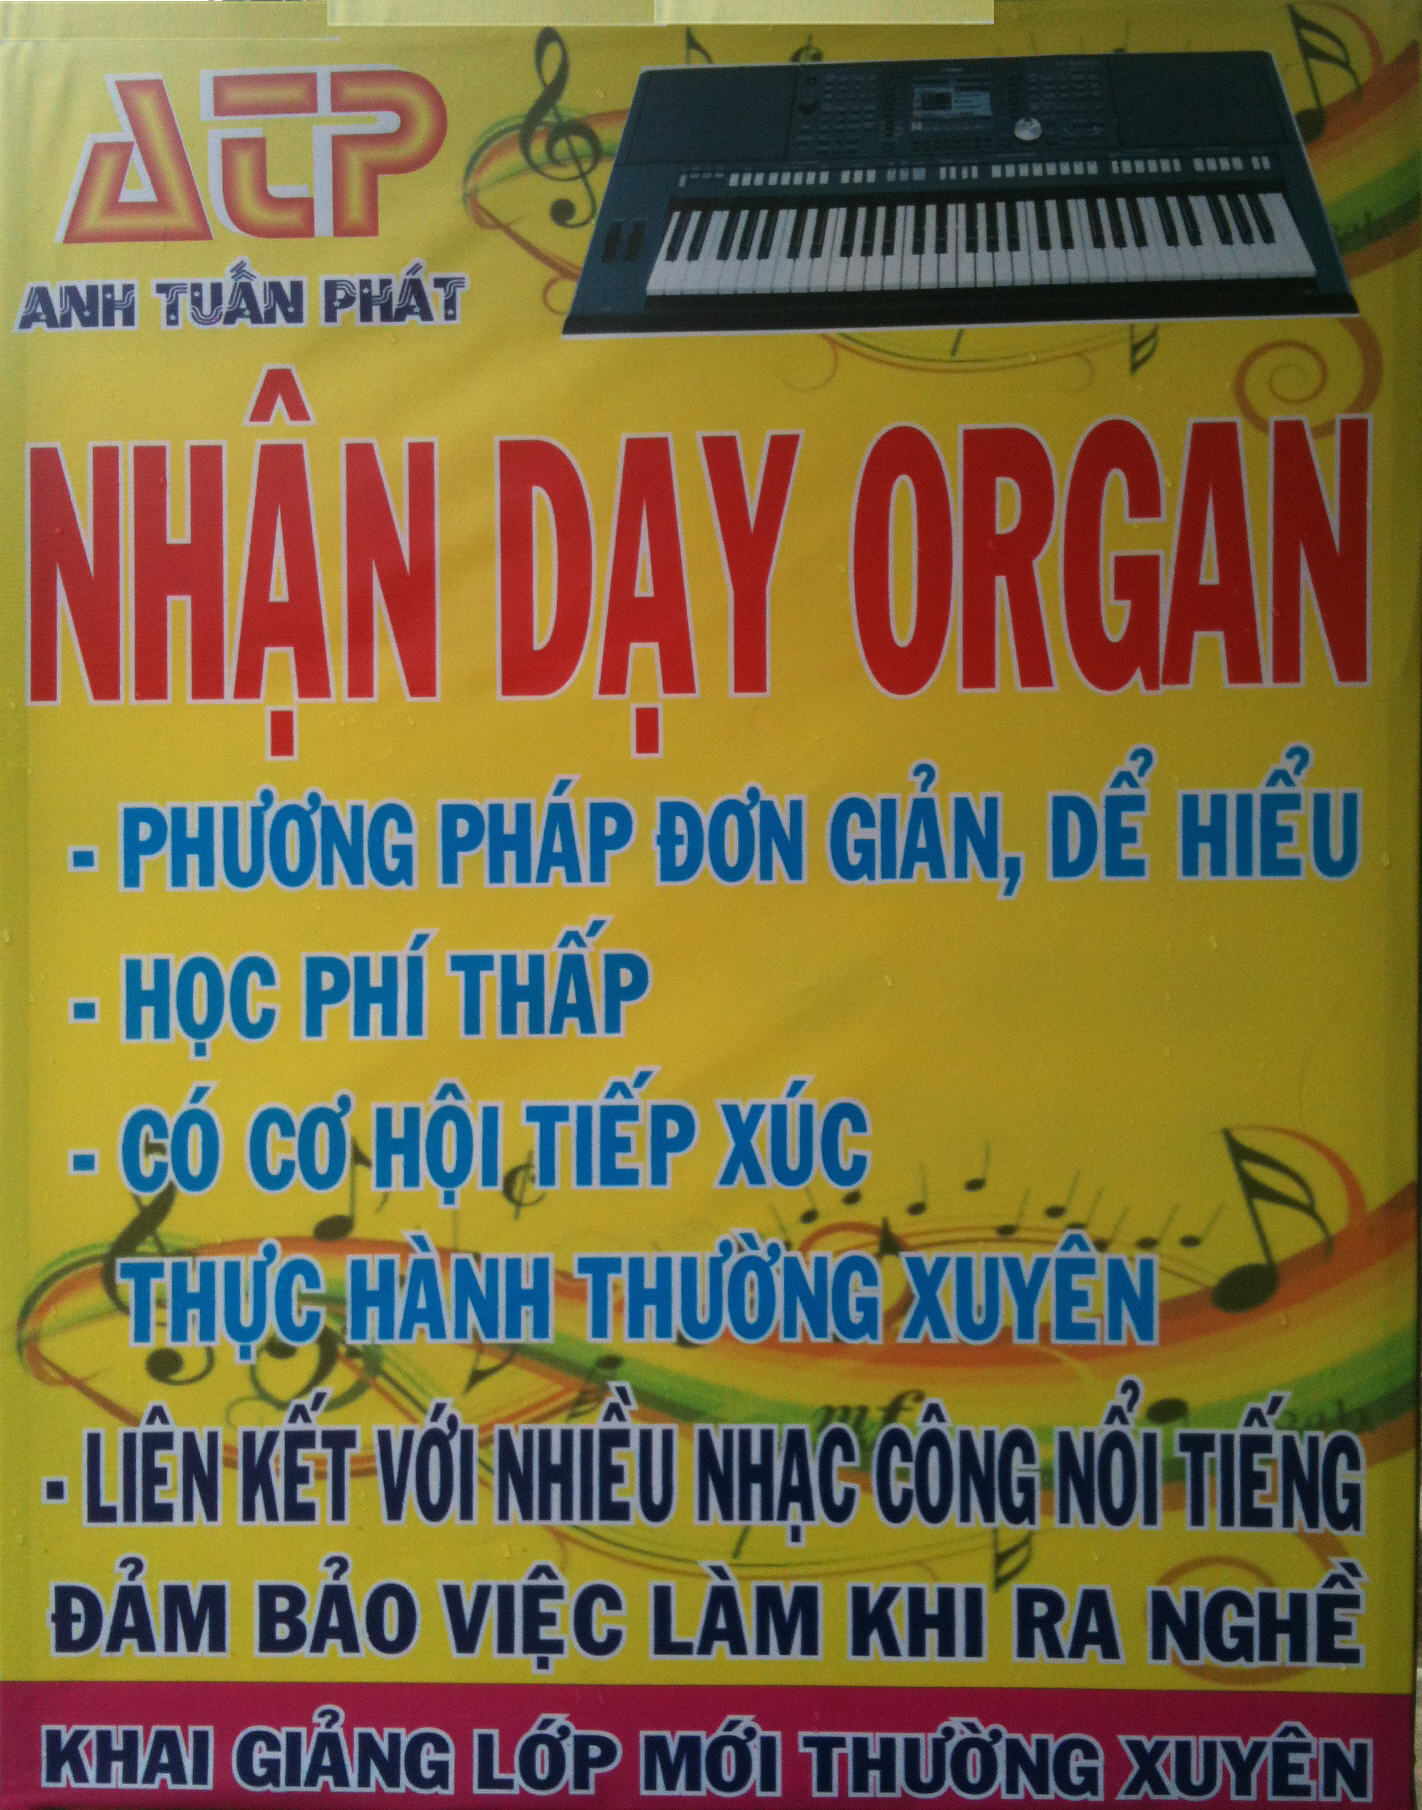 Dạy đàn Organ tại Bình Dương